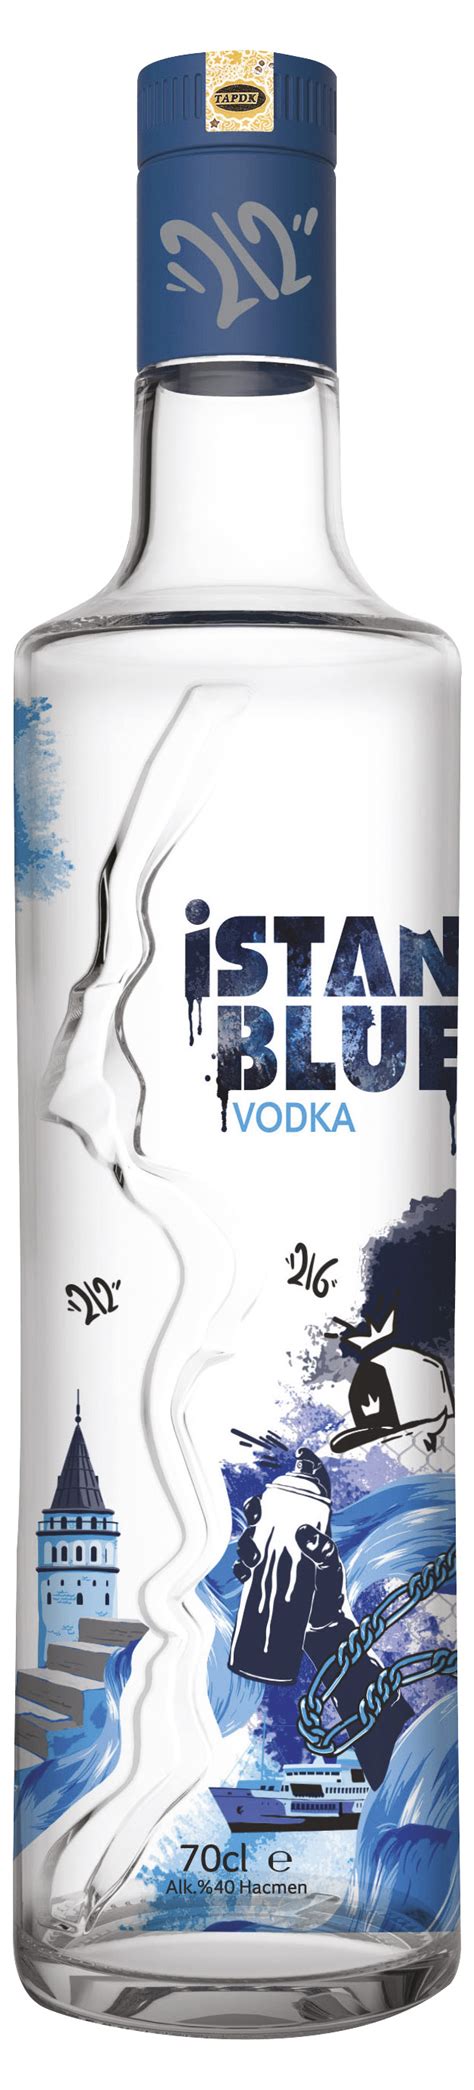 istanbul blue votka fiyatları